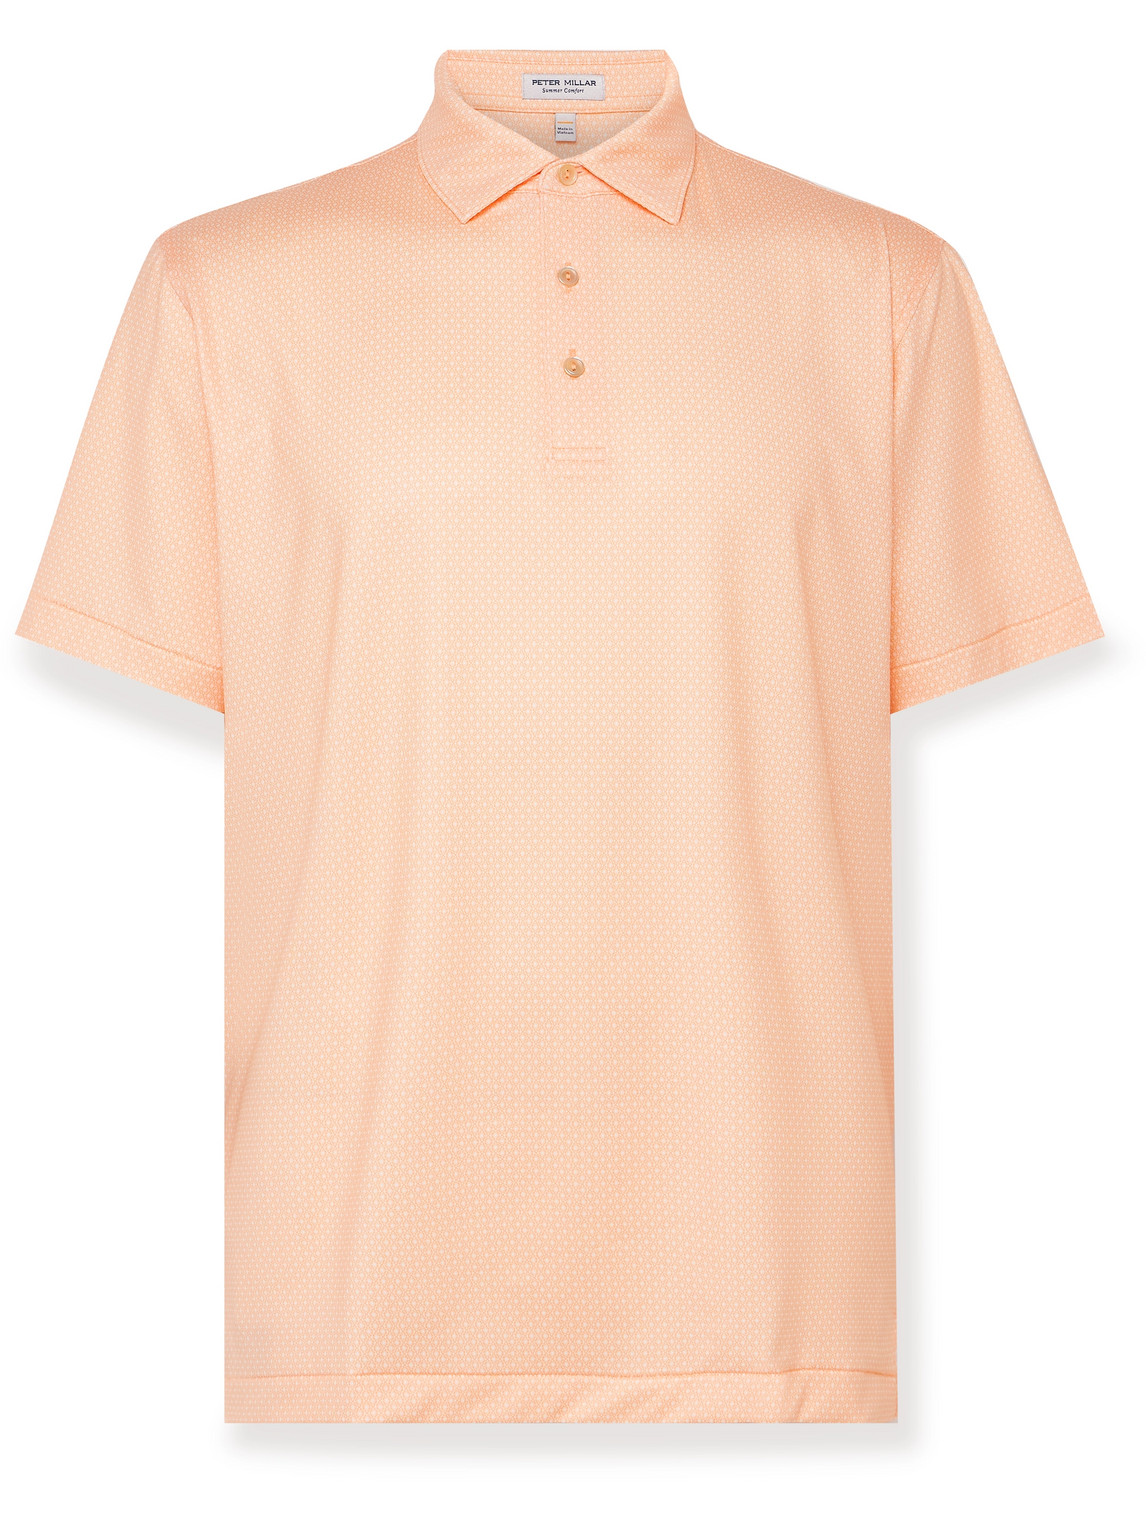 Peter Millar - Tesseract Printed Tech-Jersey Polo Shirt - Men - Orange - S von Peter Millar